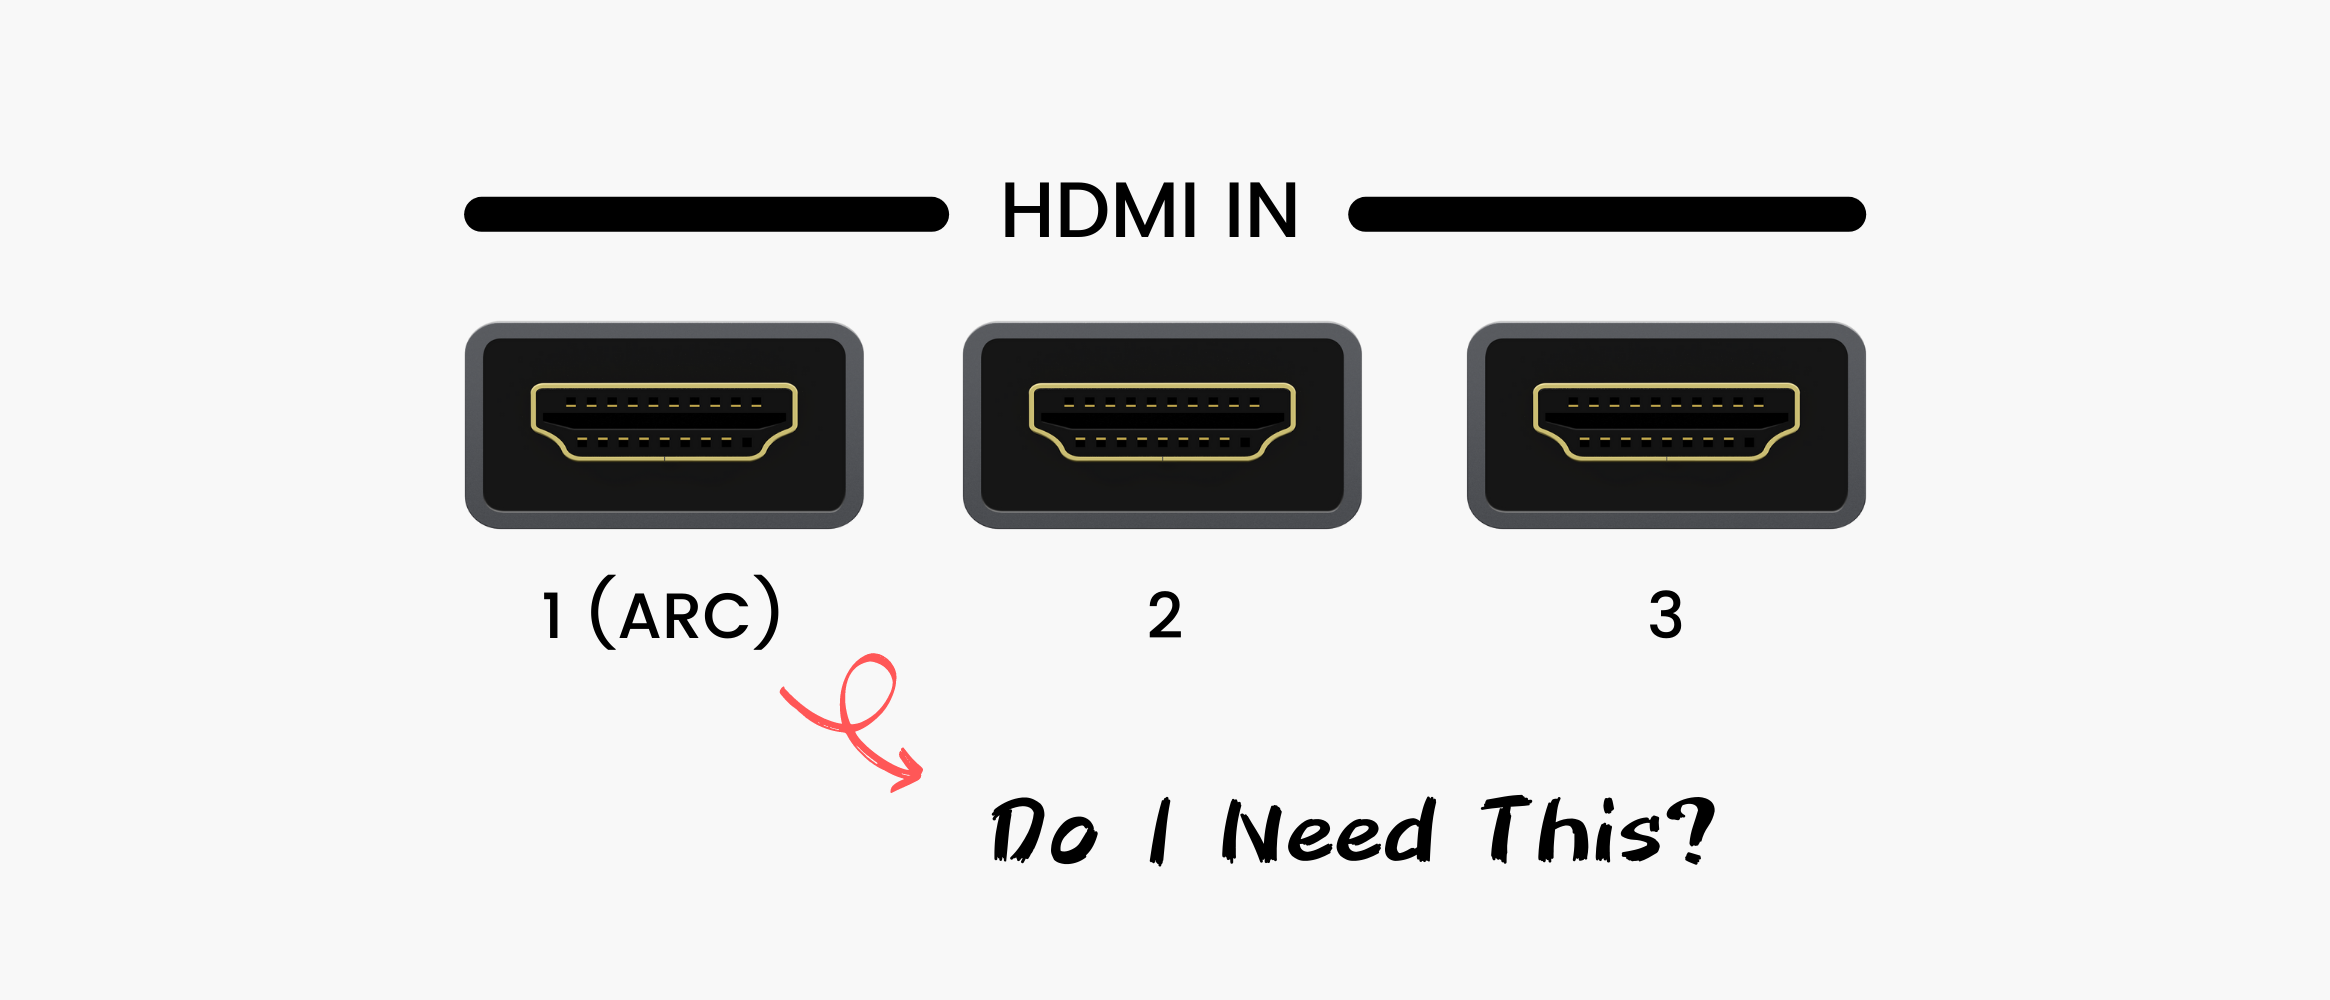 Qué es HDMI ARC y lo necesito? – iVANKY